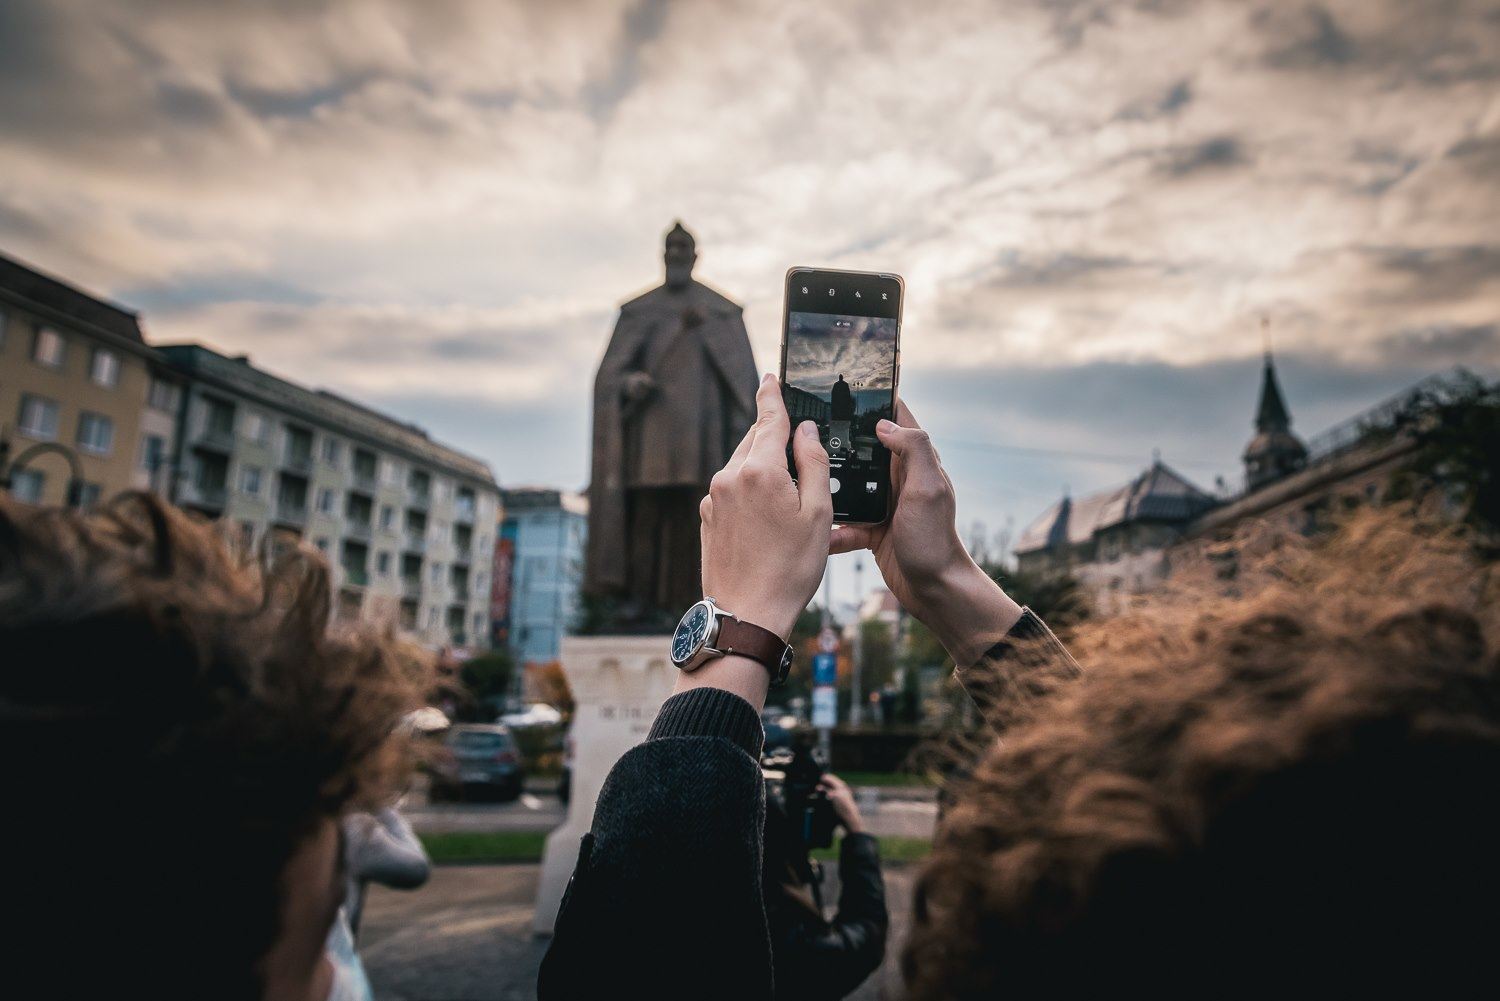 Transilvanijski kip princa Bethlena svečano otvoren u Marosvásárhely Targu Muresu